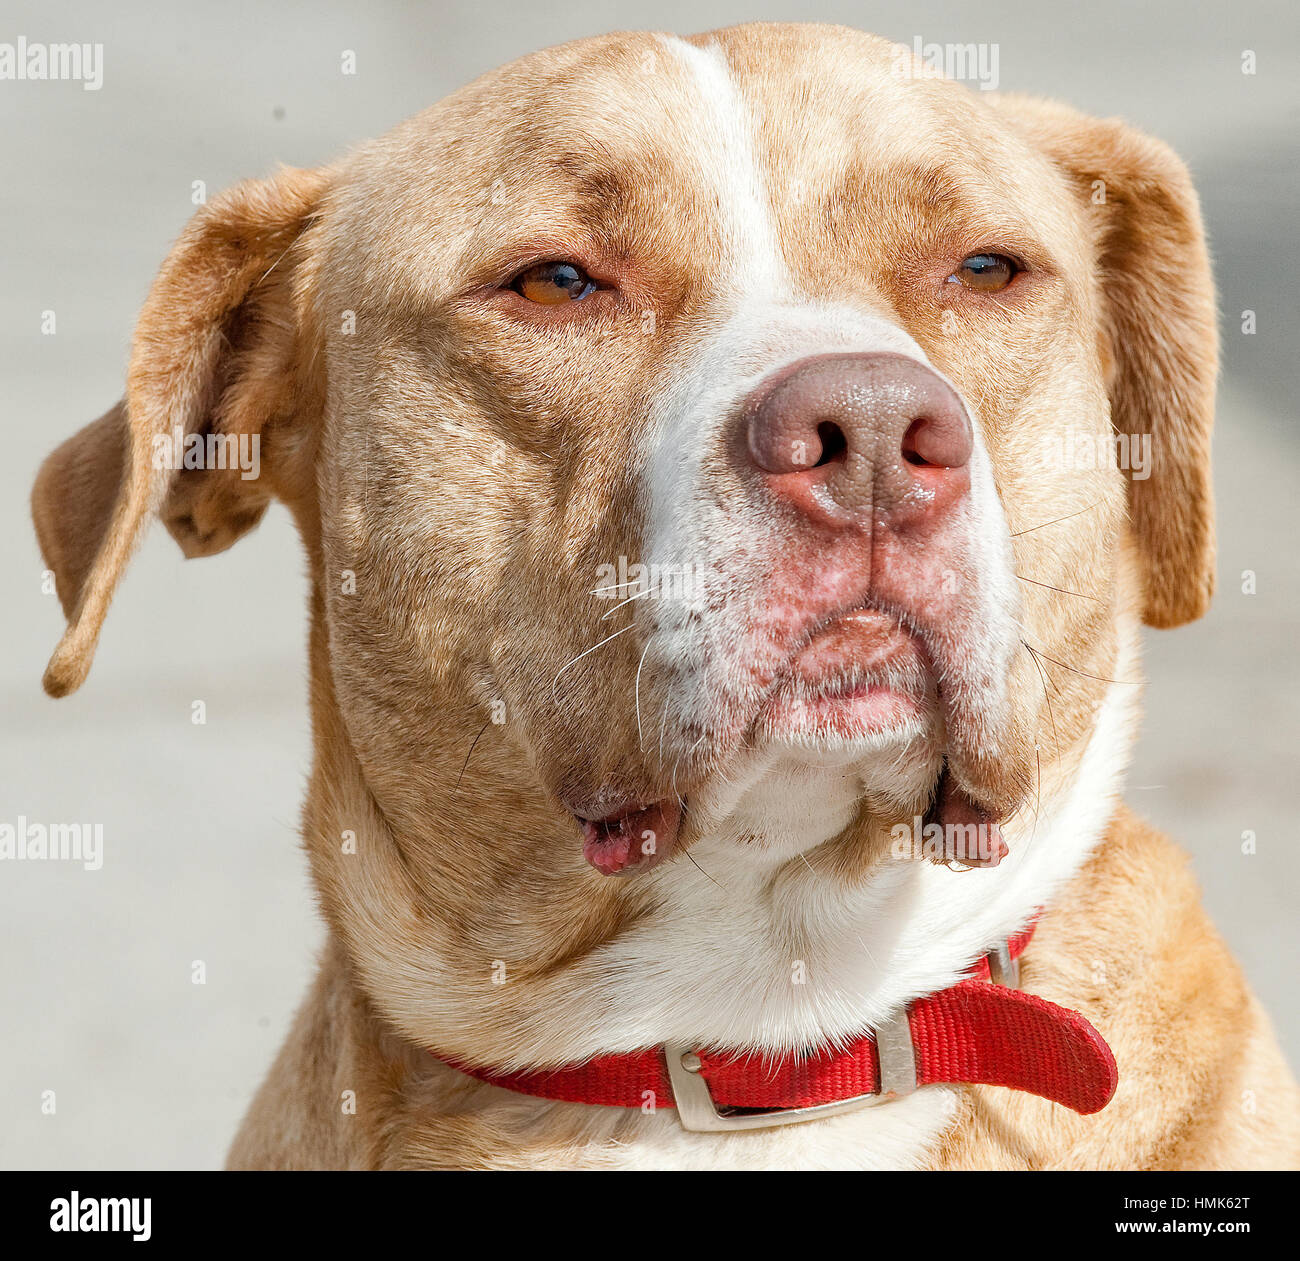 Tan Hund mit weißen Streifen Rettung Hund gemischt Rasse Pitbull schließen  Sie Kopfschuss regal Ausdruck Stockfotografie - Alamy